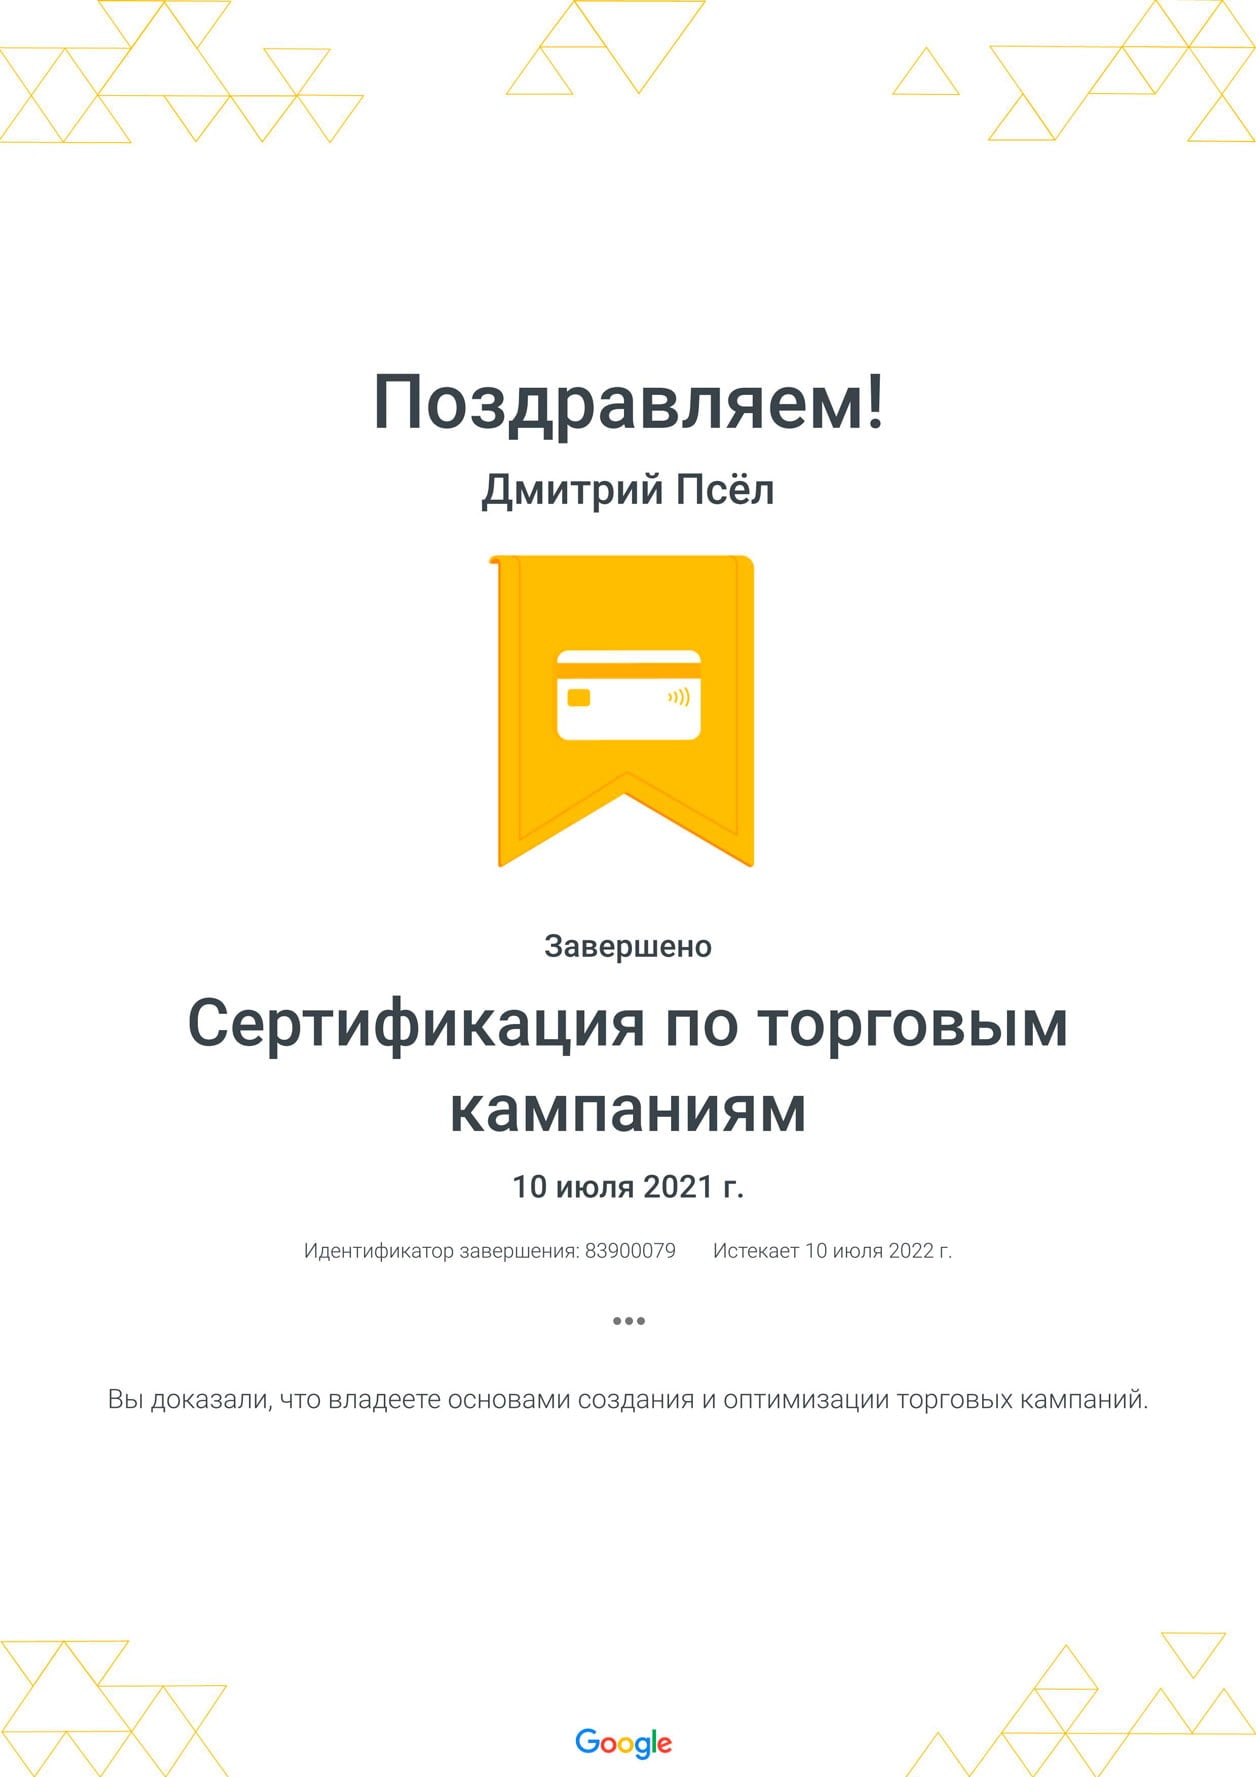 Дмитрий Псёл - сертификат по торговым кампаниям